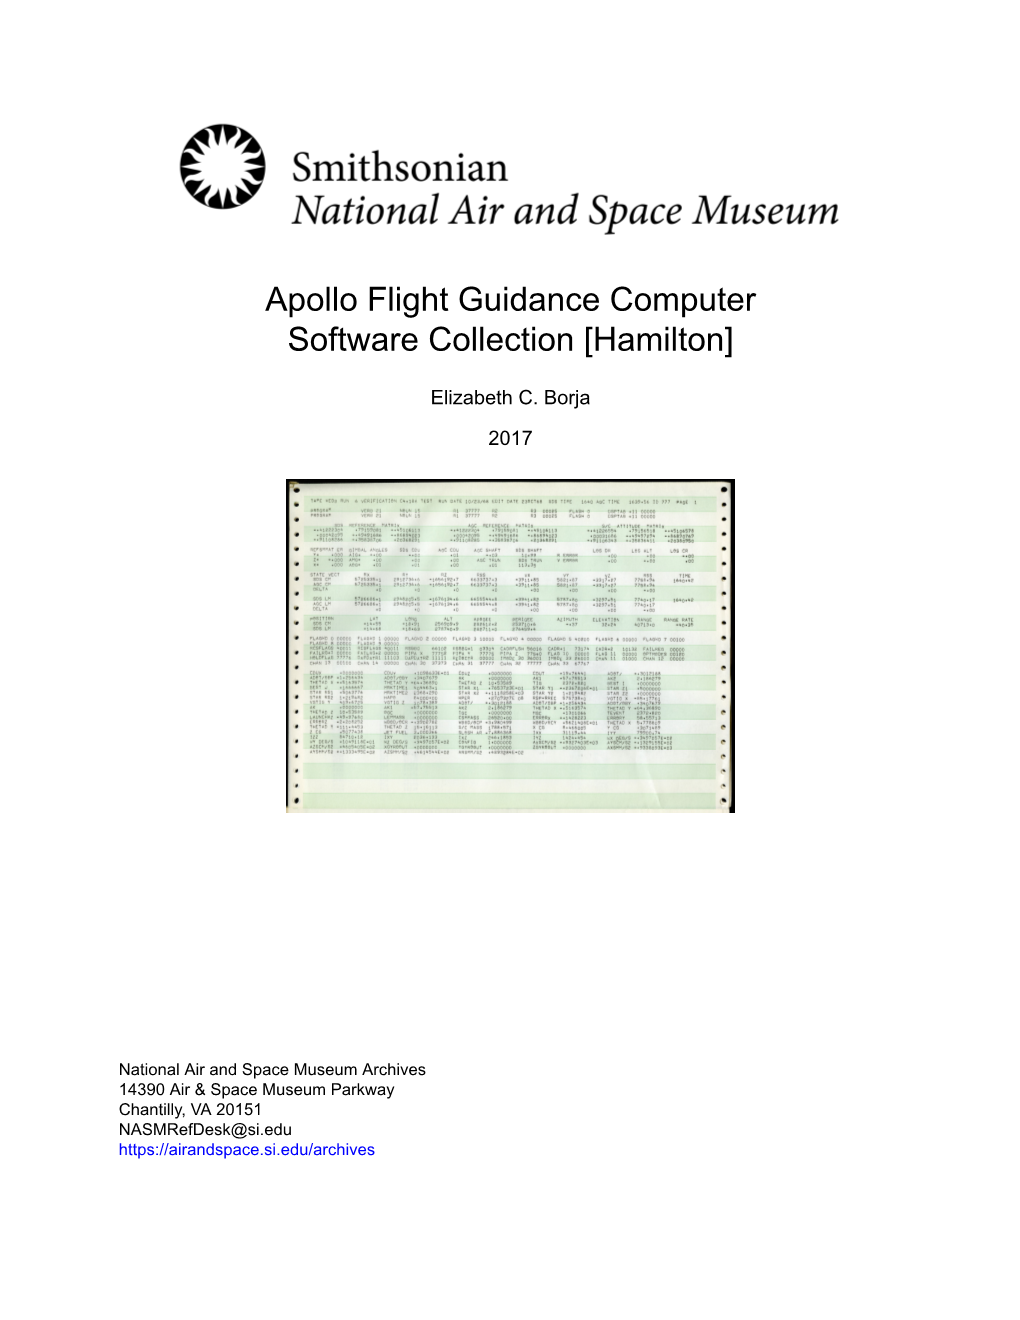 Apollo Flight Guidance Computer Software Collection [Hamilton]